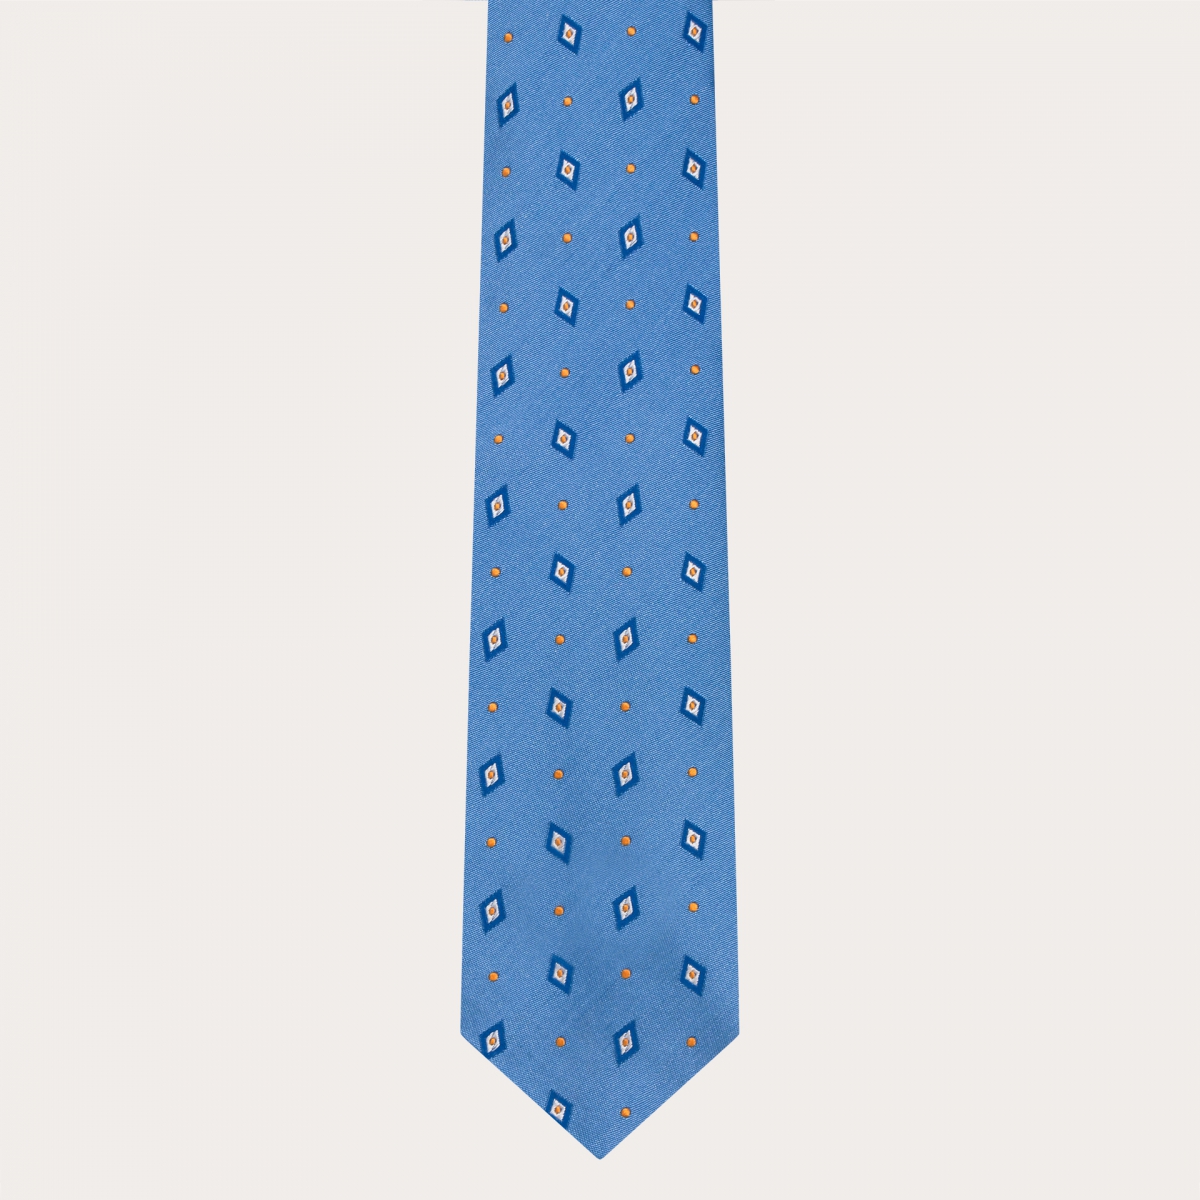 Cravatta in seta jacquard per abito, azzurro con rombi e puntini blu e giallo